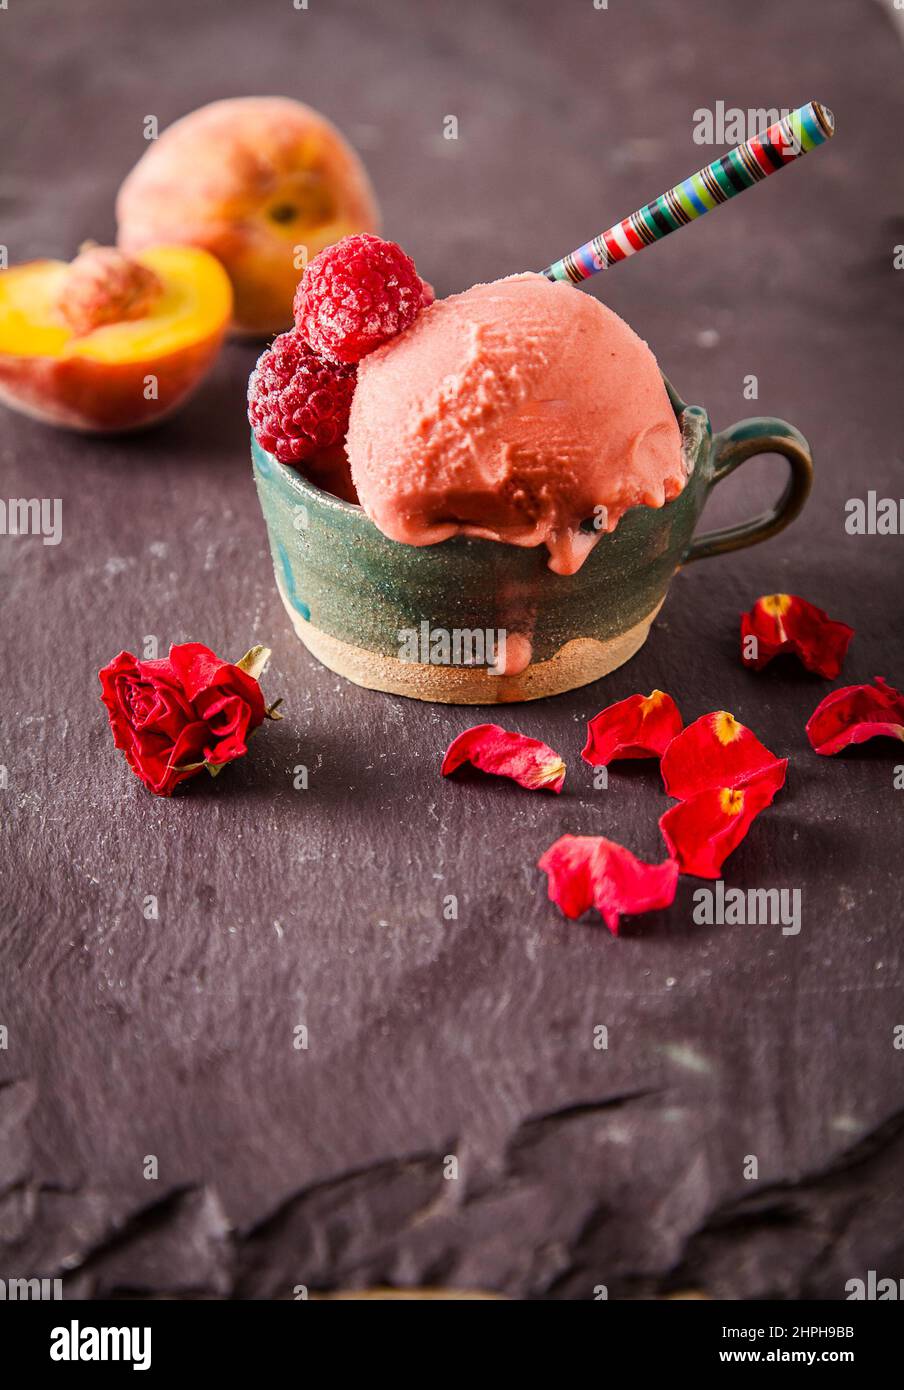 Italienisches Eis (Gelato) in einer Tasse mit Früchten auf Schiefergrund. Süßes und sommerliches Menükonzept. Stockfoto